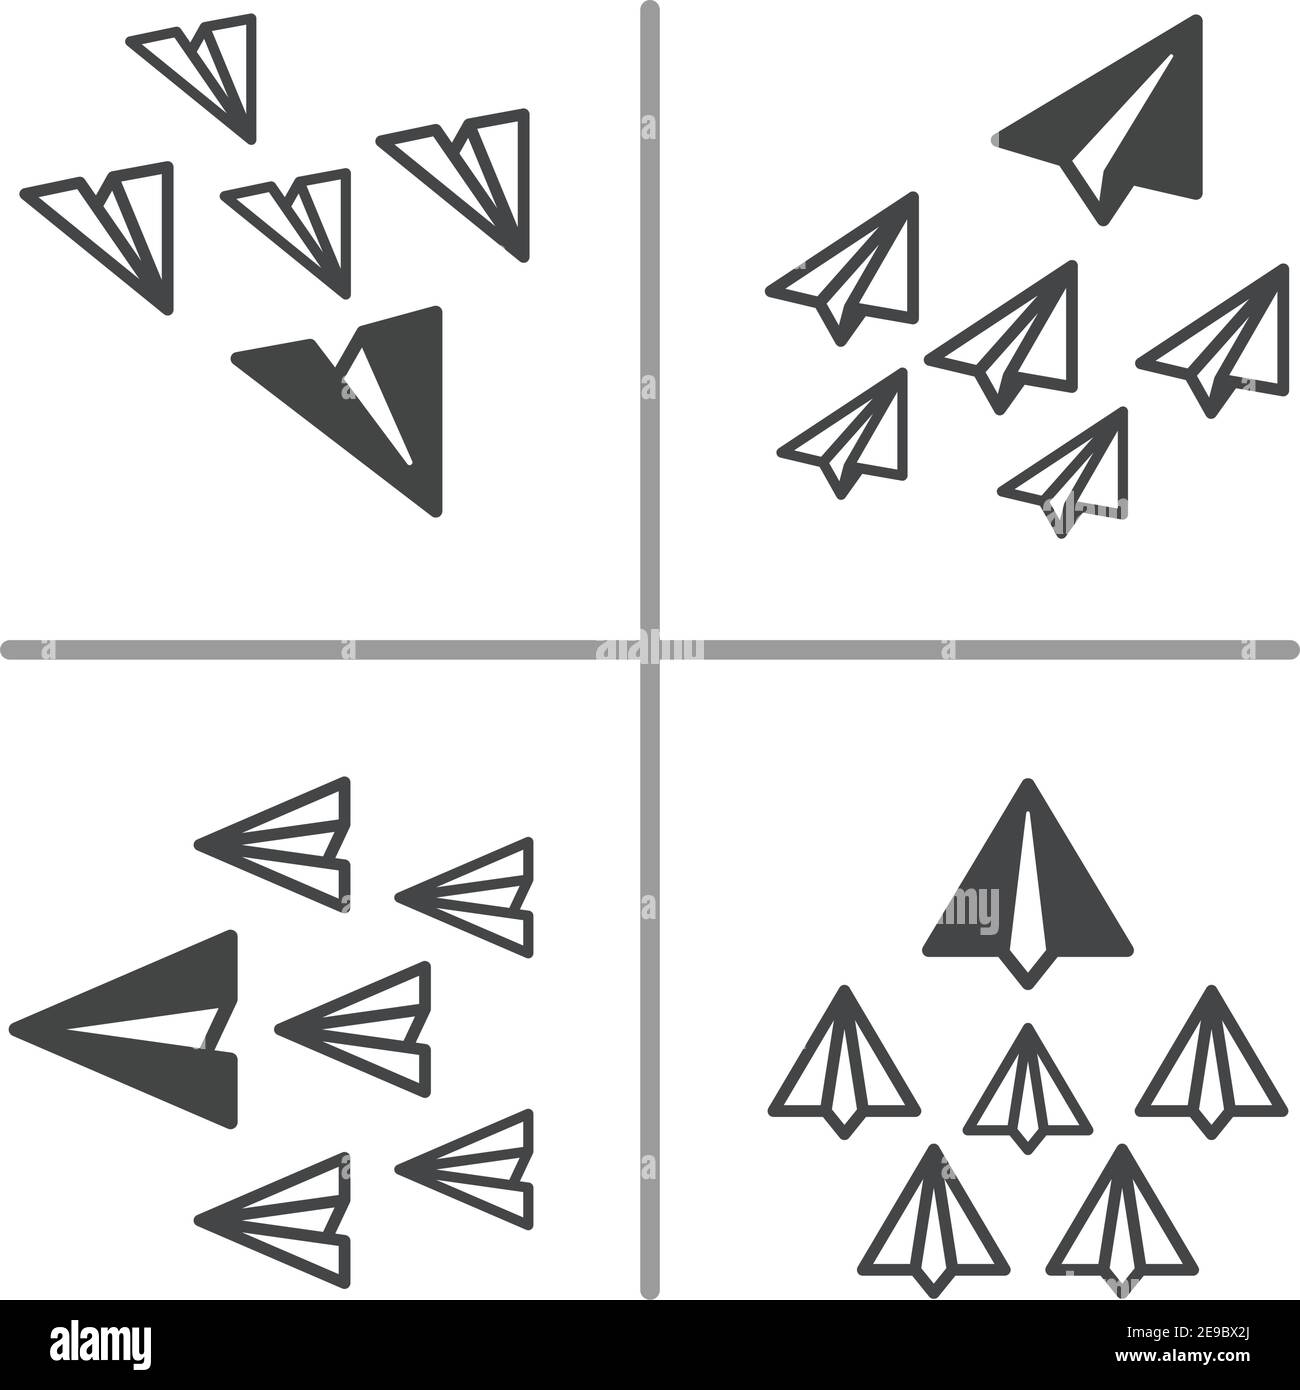 avion papier volant de la même manière, concept d'entreprise et de leadership, avion papier illustration conceptuelle et ensemble de vecteurs Illustration de Vecteur